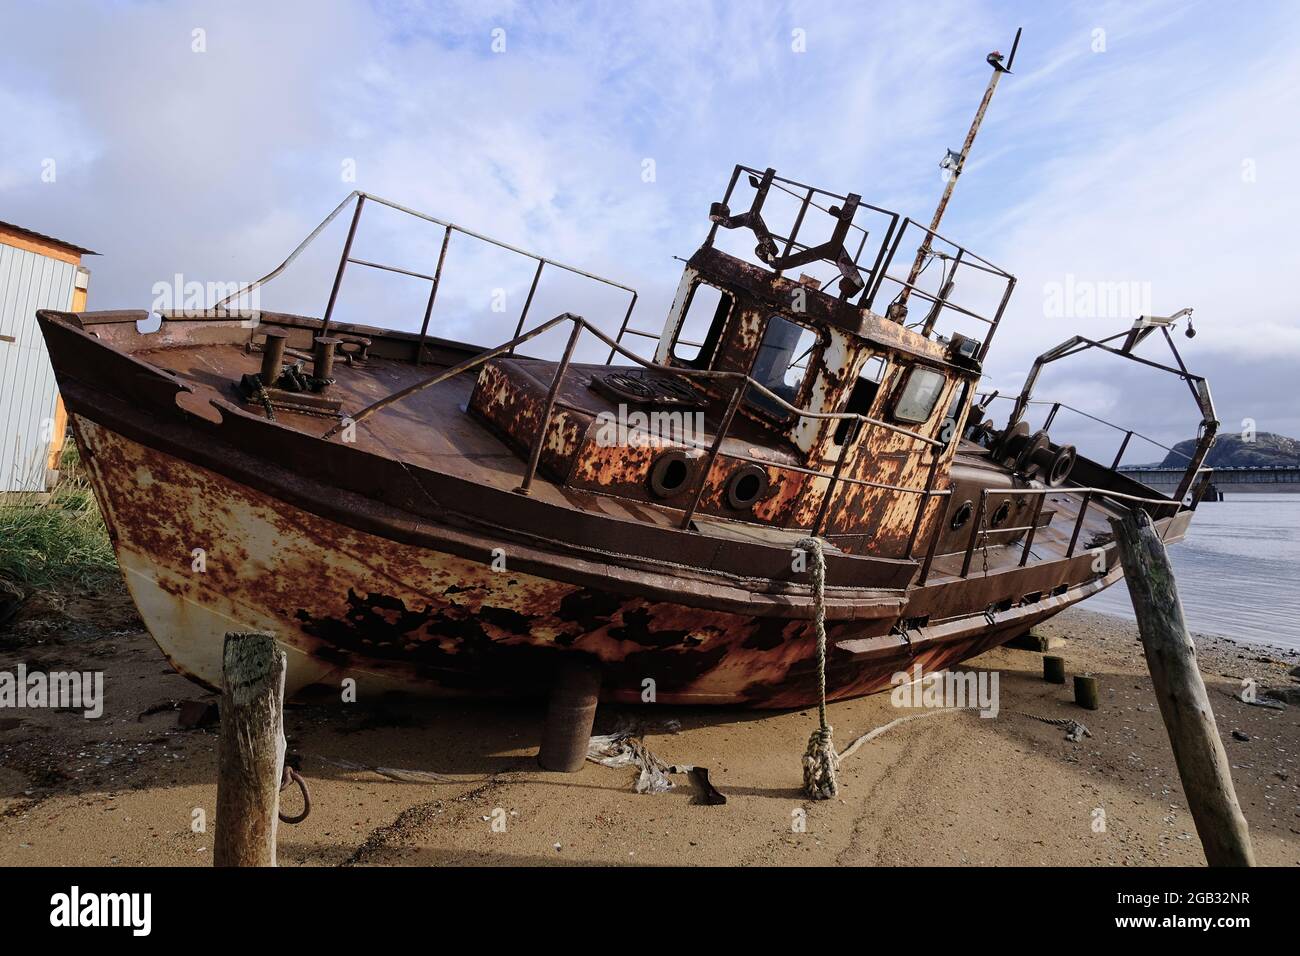 Un barco oxidado a orillas del Mar Blanco. El barco está varado. Norte. Foto de stock